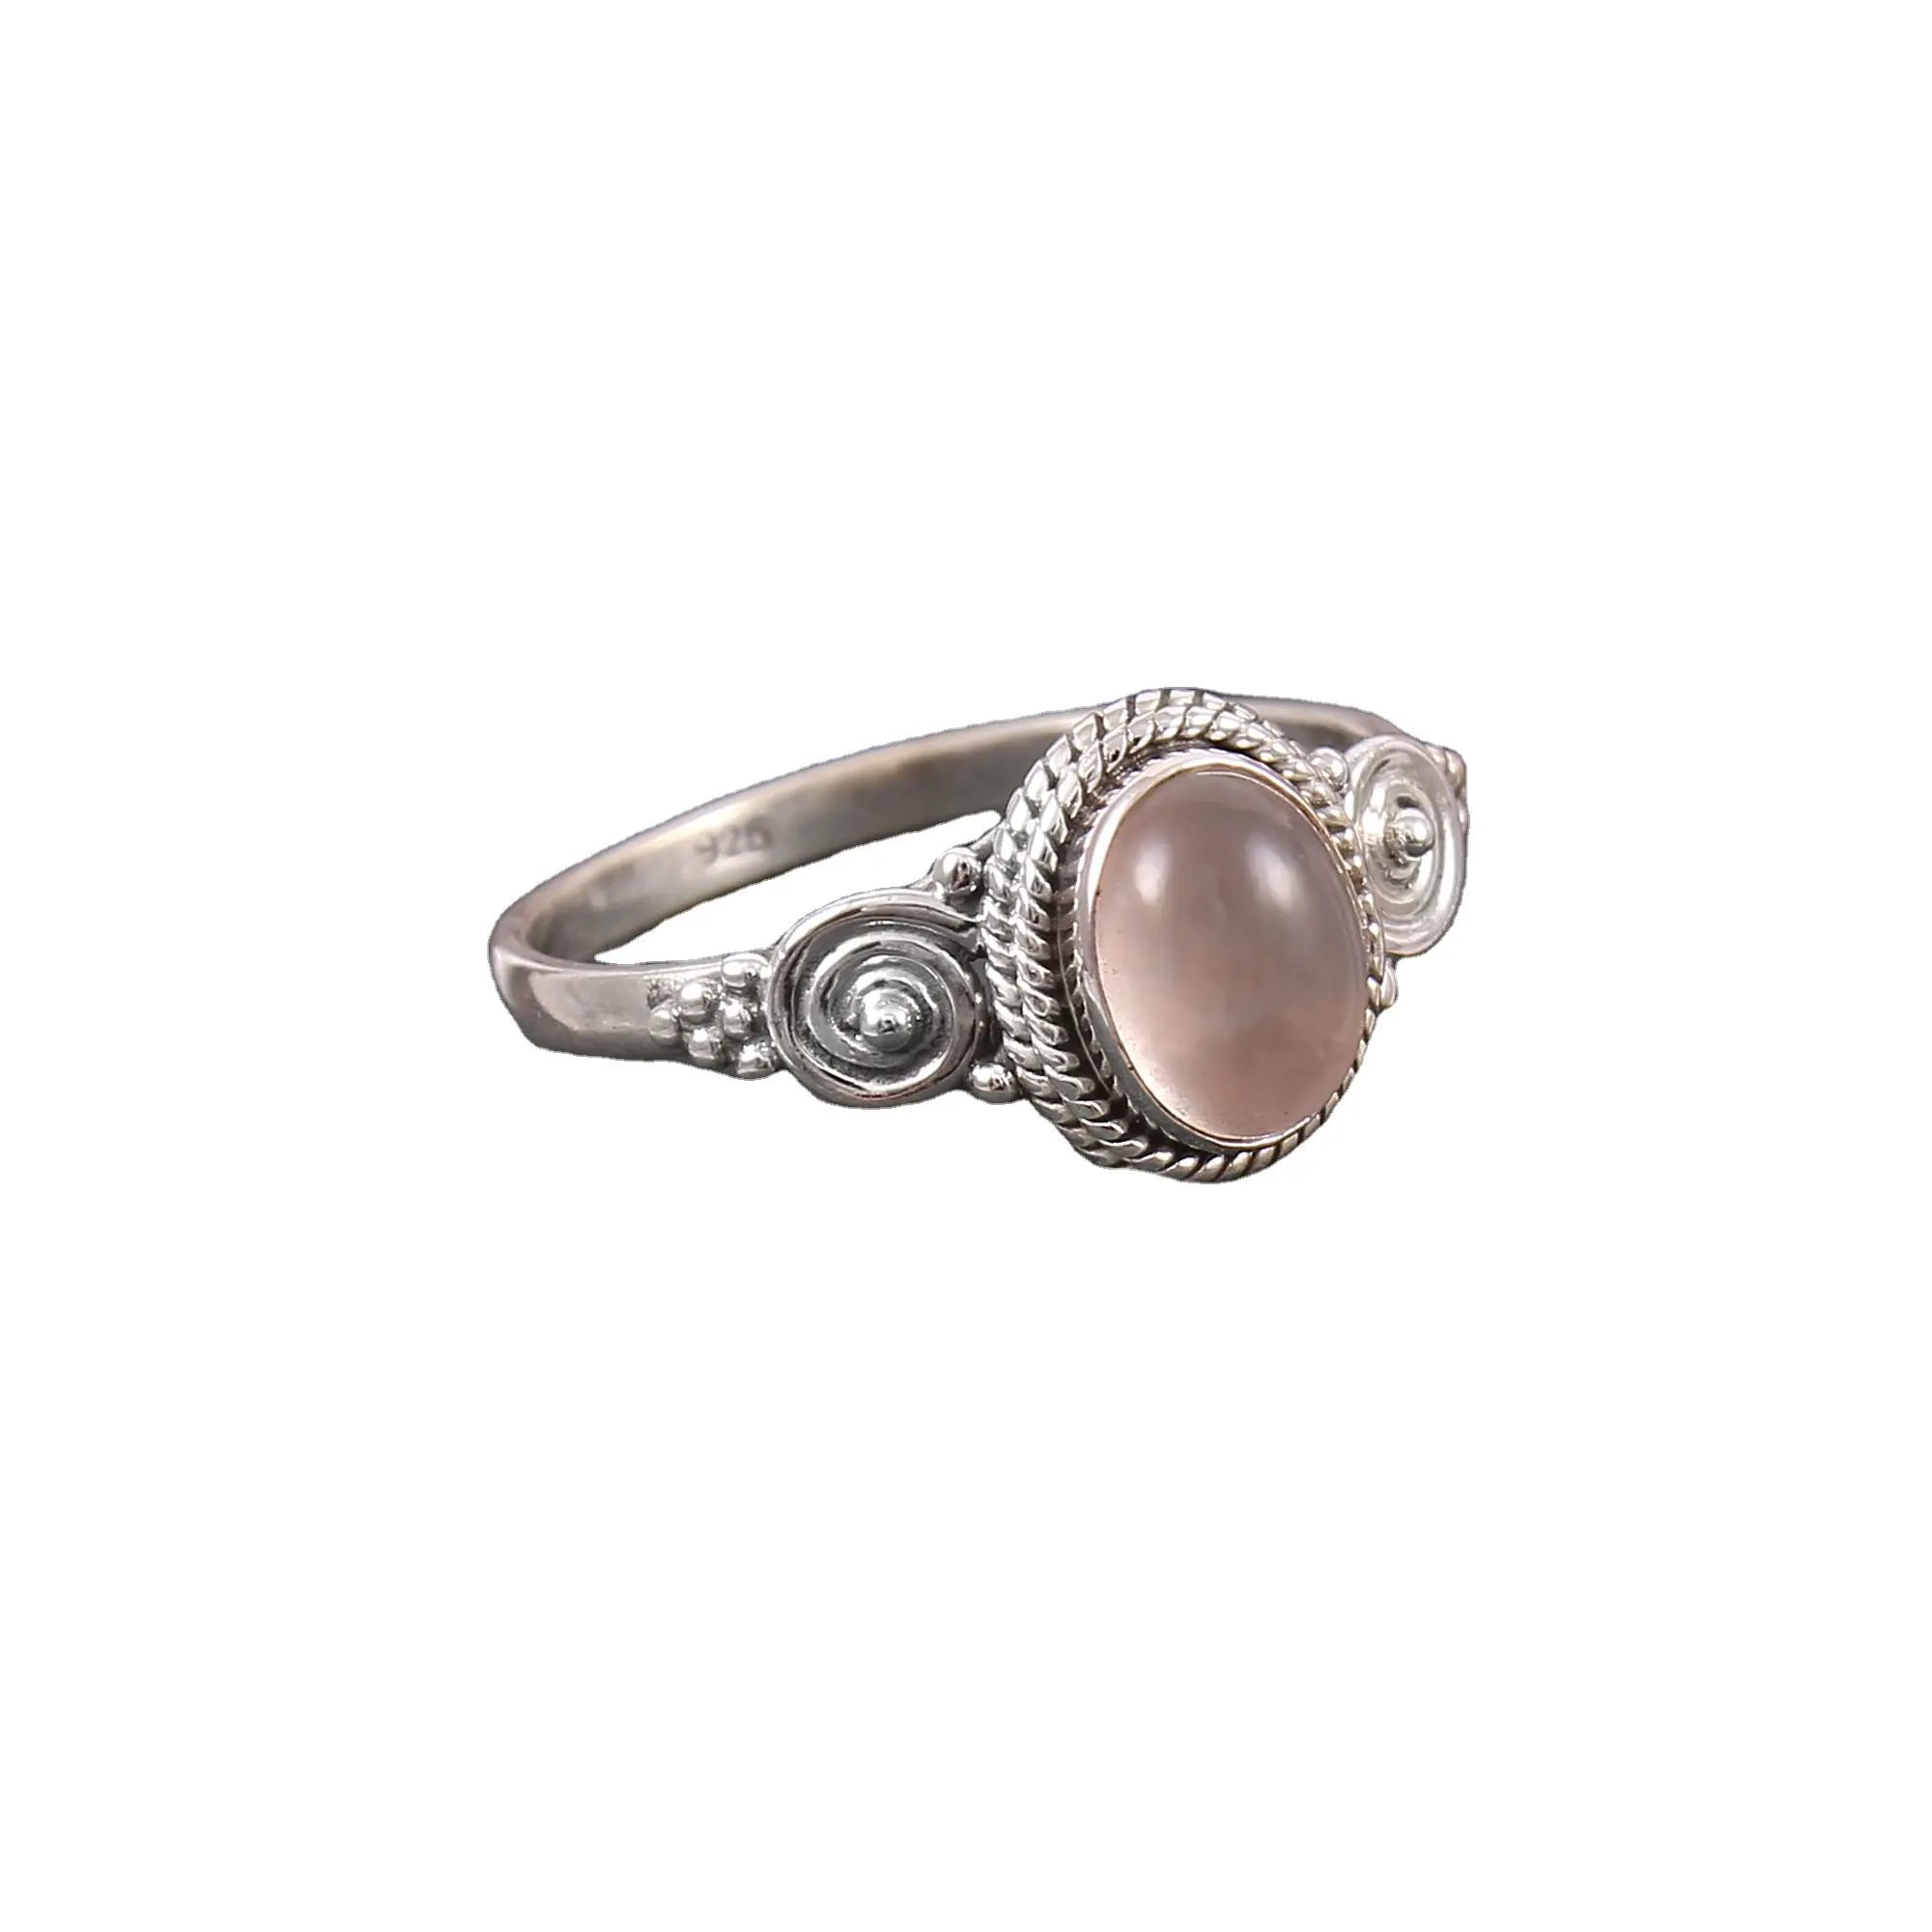 Großhandels preis aus gezeichnete Qualität natürliche rosa Rosenquarz ovale Cabochon Designer Ringe für Frauen und Mädchen